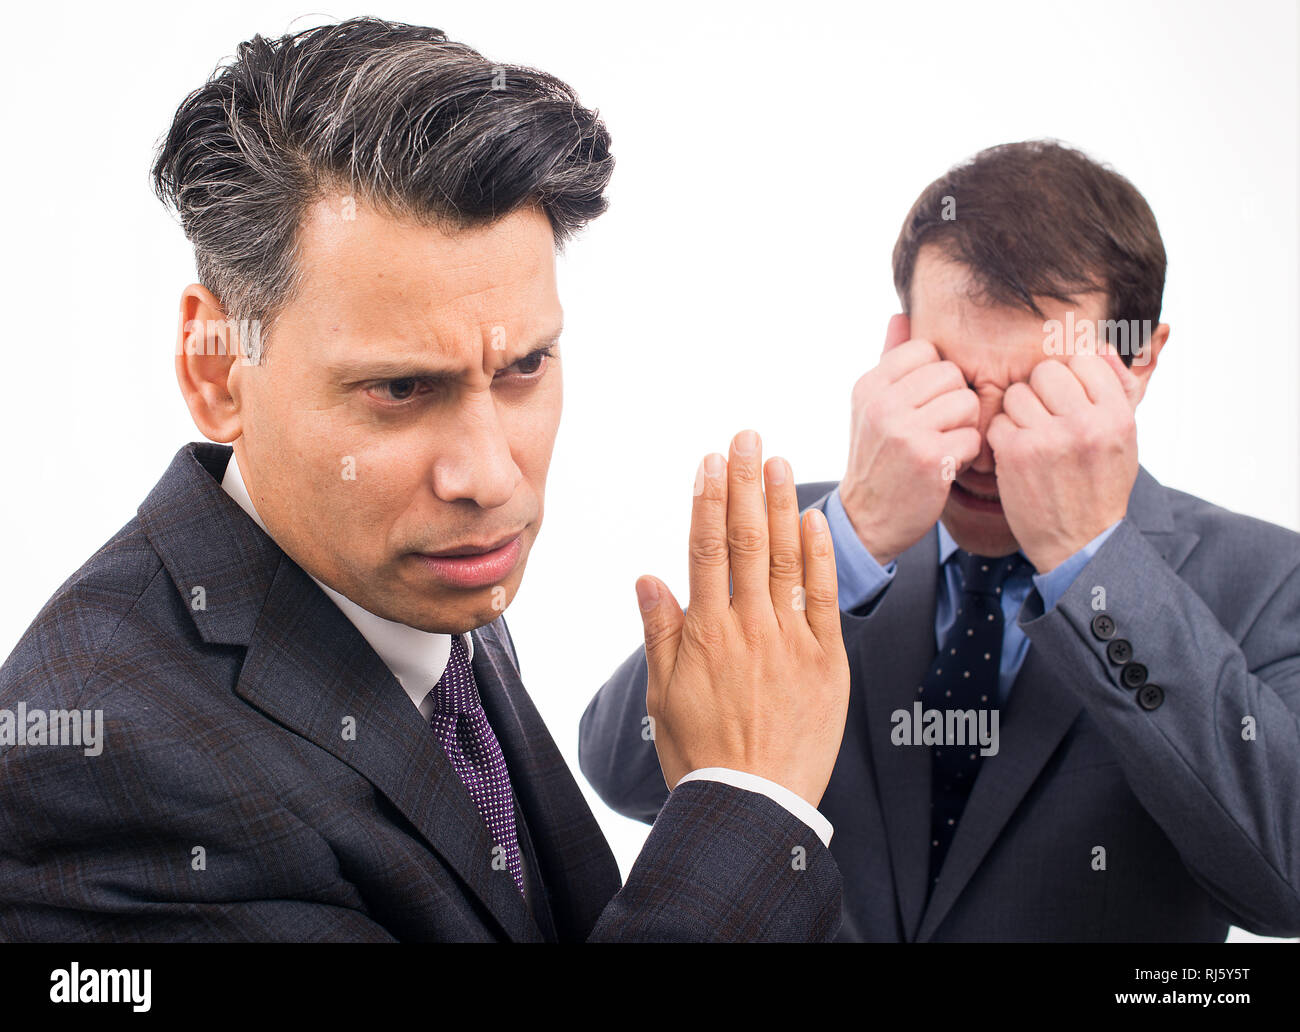 Deux hommes d'affaires ayant un argument, l'un ne veut pas écouter et l'autre pleure, sur un fond blanc. Banque D'Images